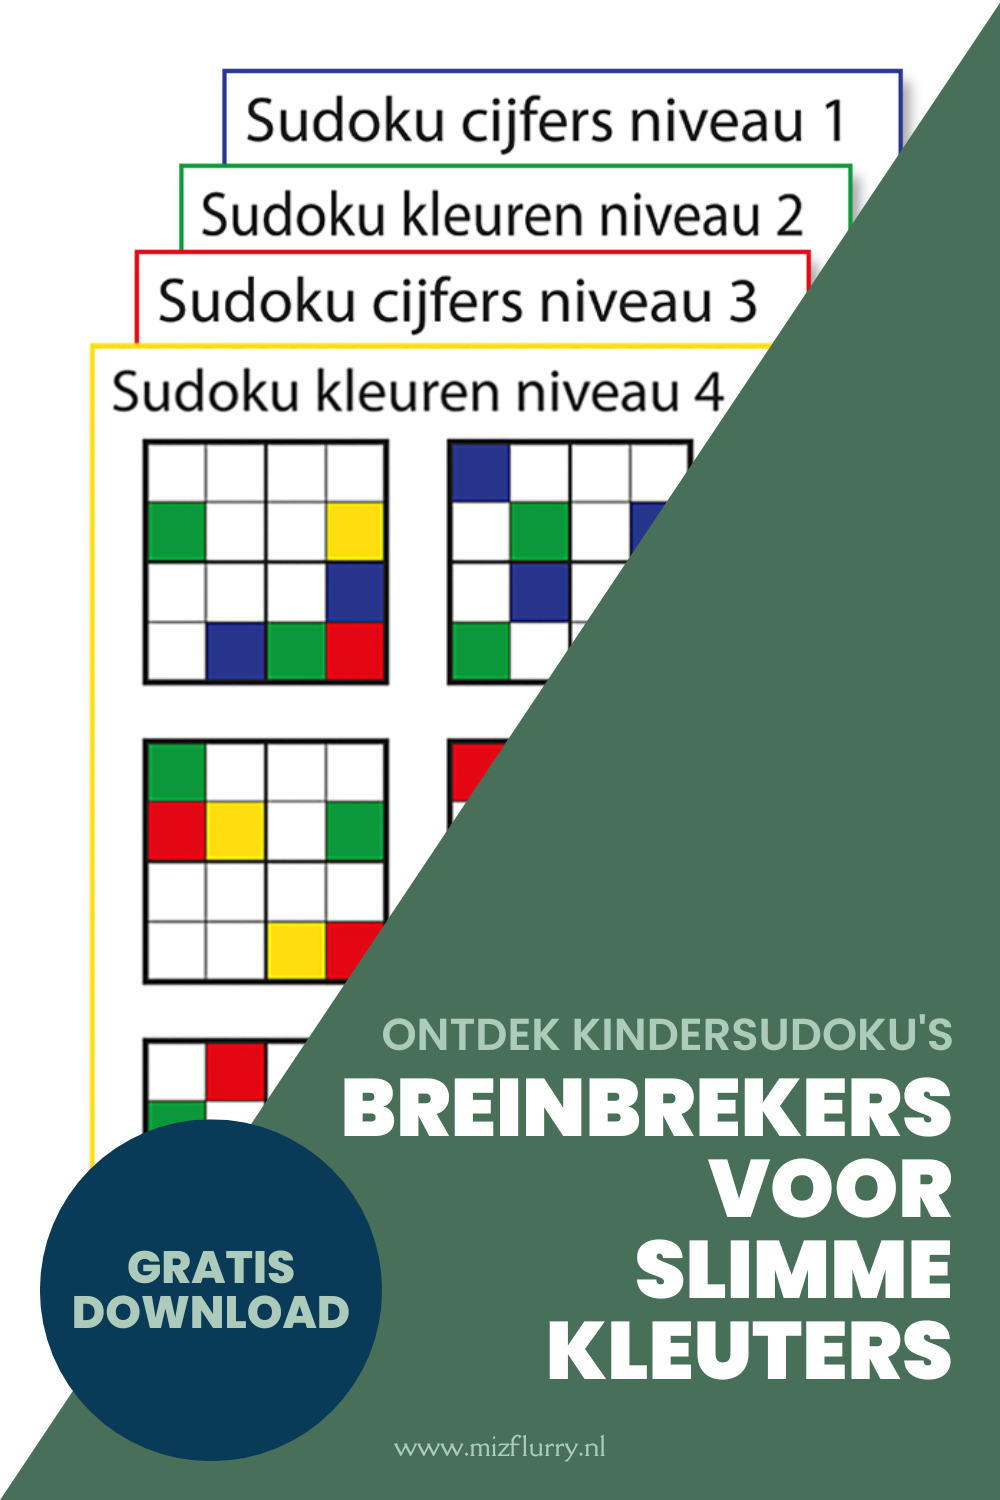 Pinterest-afbeelding met een voorvertoning van de sudokus met cijfers en kleuren. Tekst op afbeelding: ontdek kindersudoku's, breinbrekers voor slimme kleuters, gratis download.